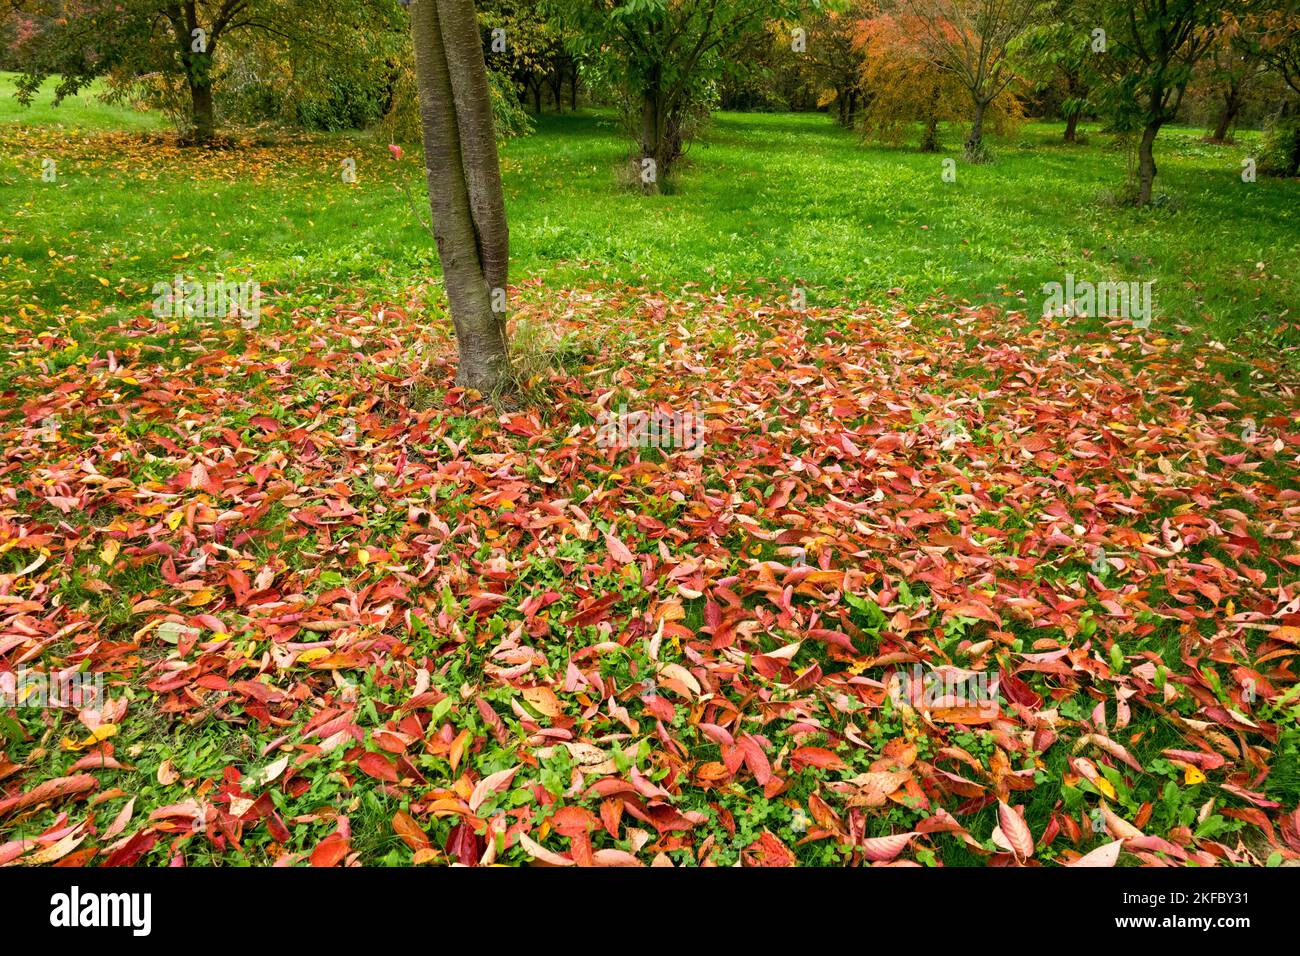 Autumn leaves on grass, Garden, Lawn, Autumn fallen leaves Stock Photo